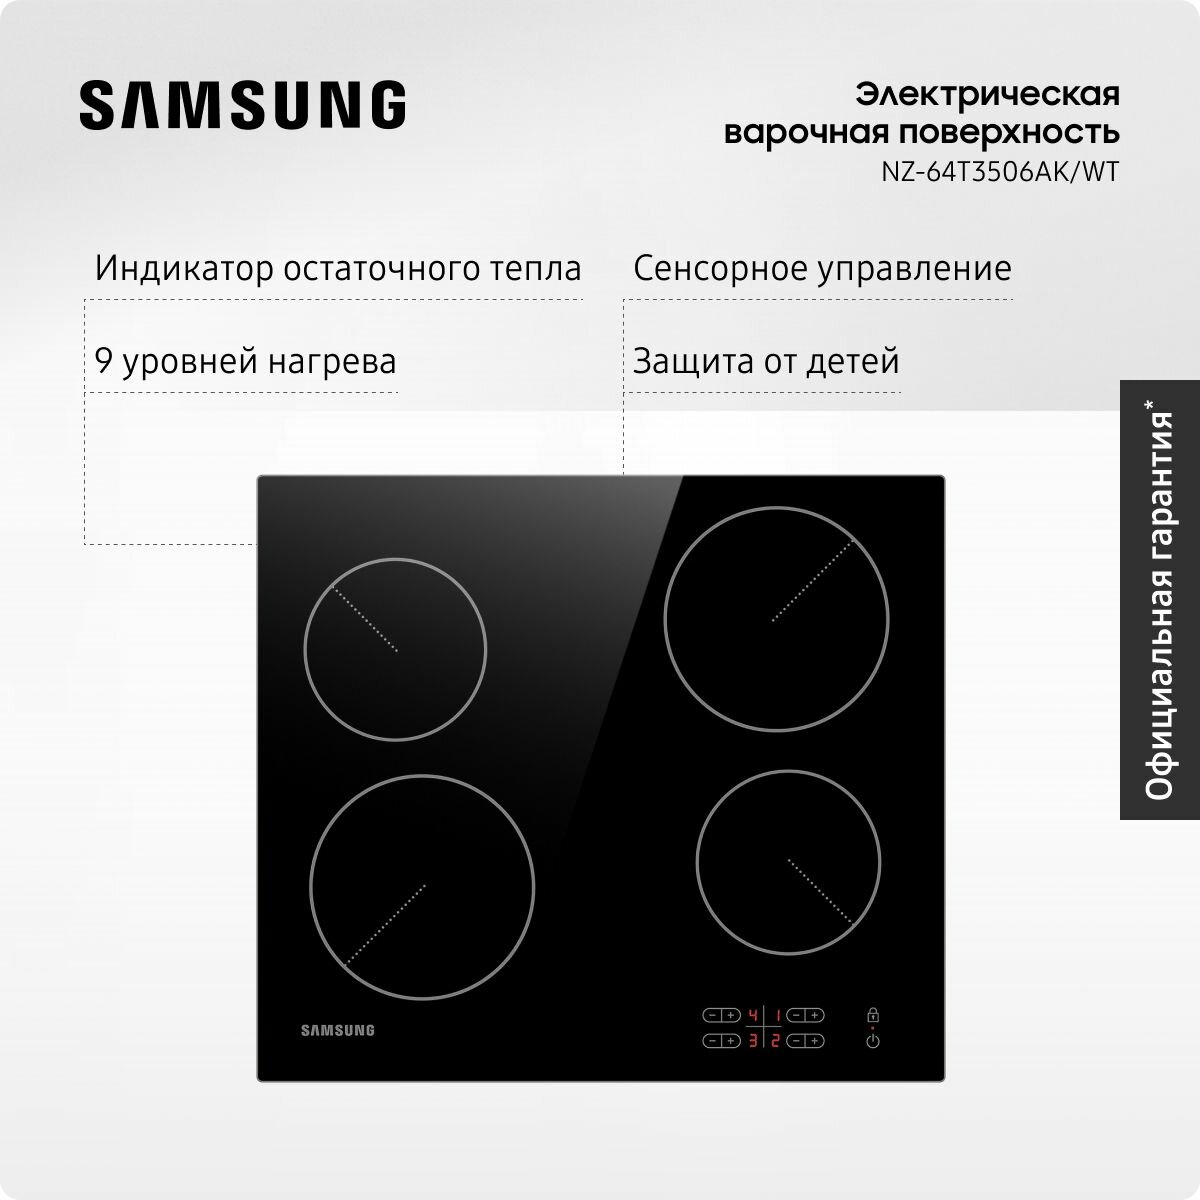 Стеклокерамическая варочная поверхность Samsung NZ-64T3506AK/WT, 4 конфорки, с сенсорным управлением, 9 уровнями нагрева, черная